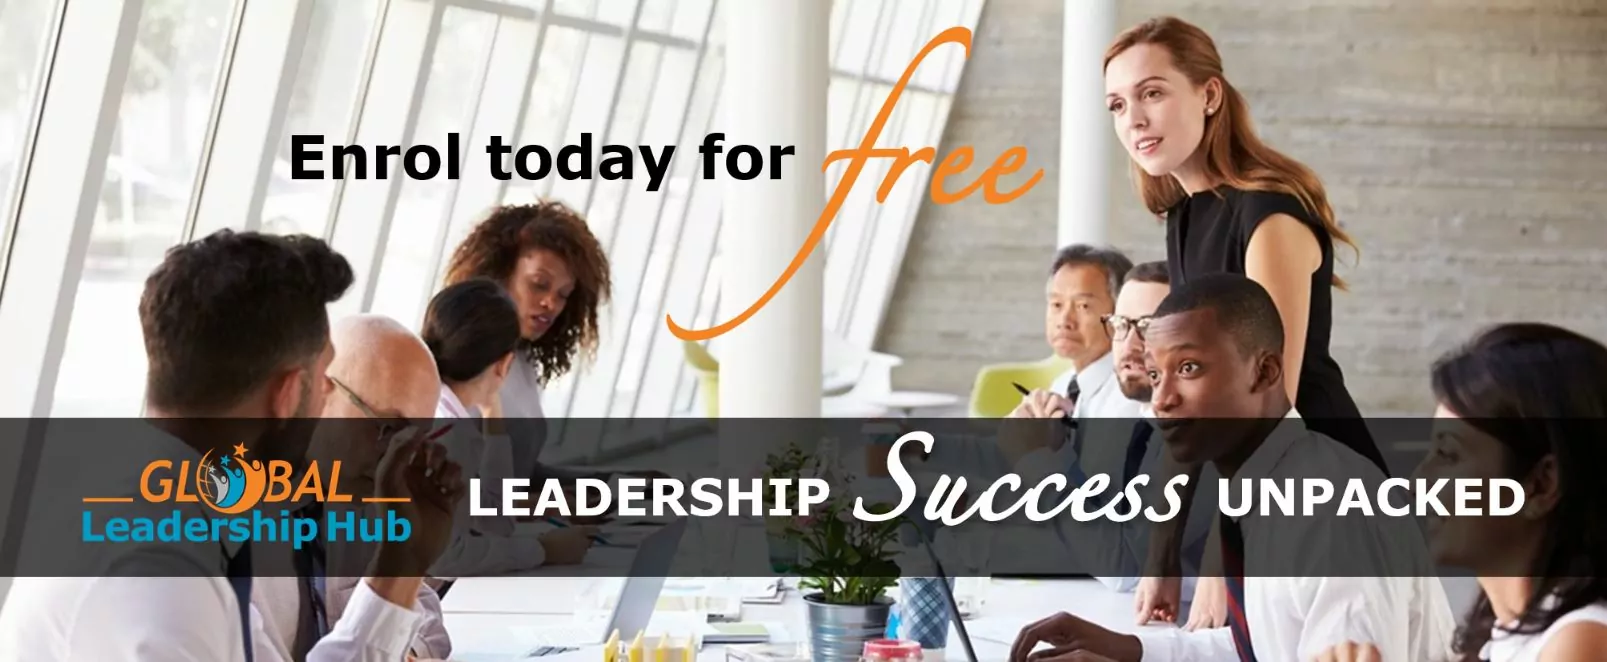 Global Leadership Hub - Online Course Platform - Enrol for free